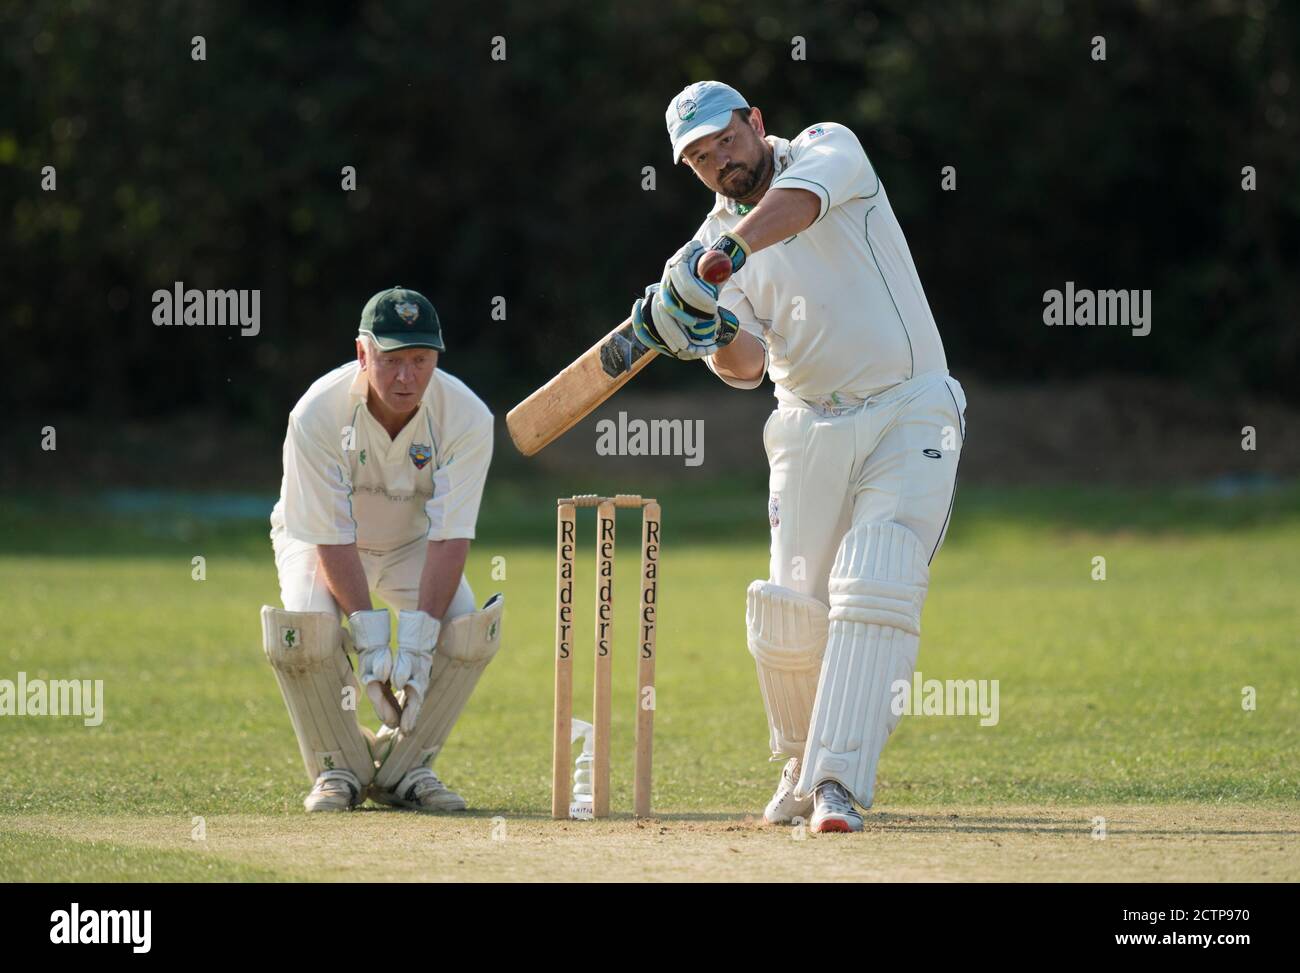 Batsman playing shot Stock Photo - Alamy